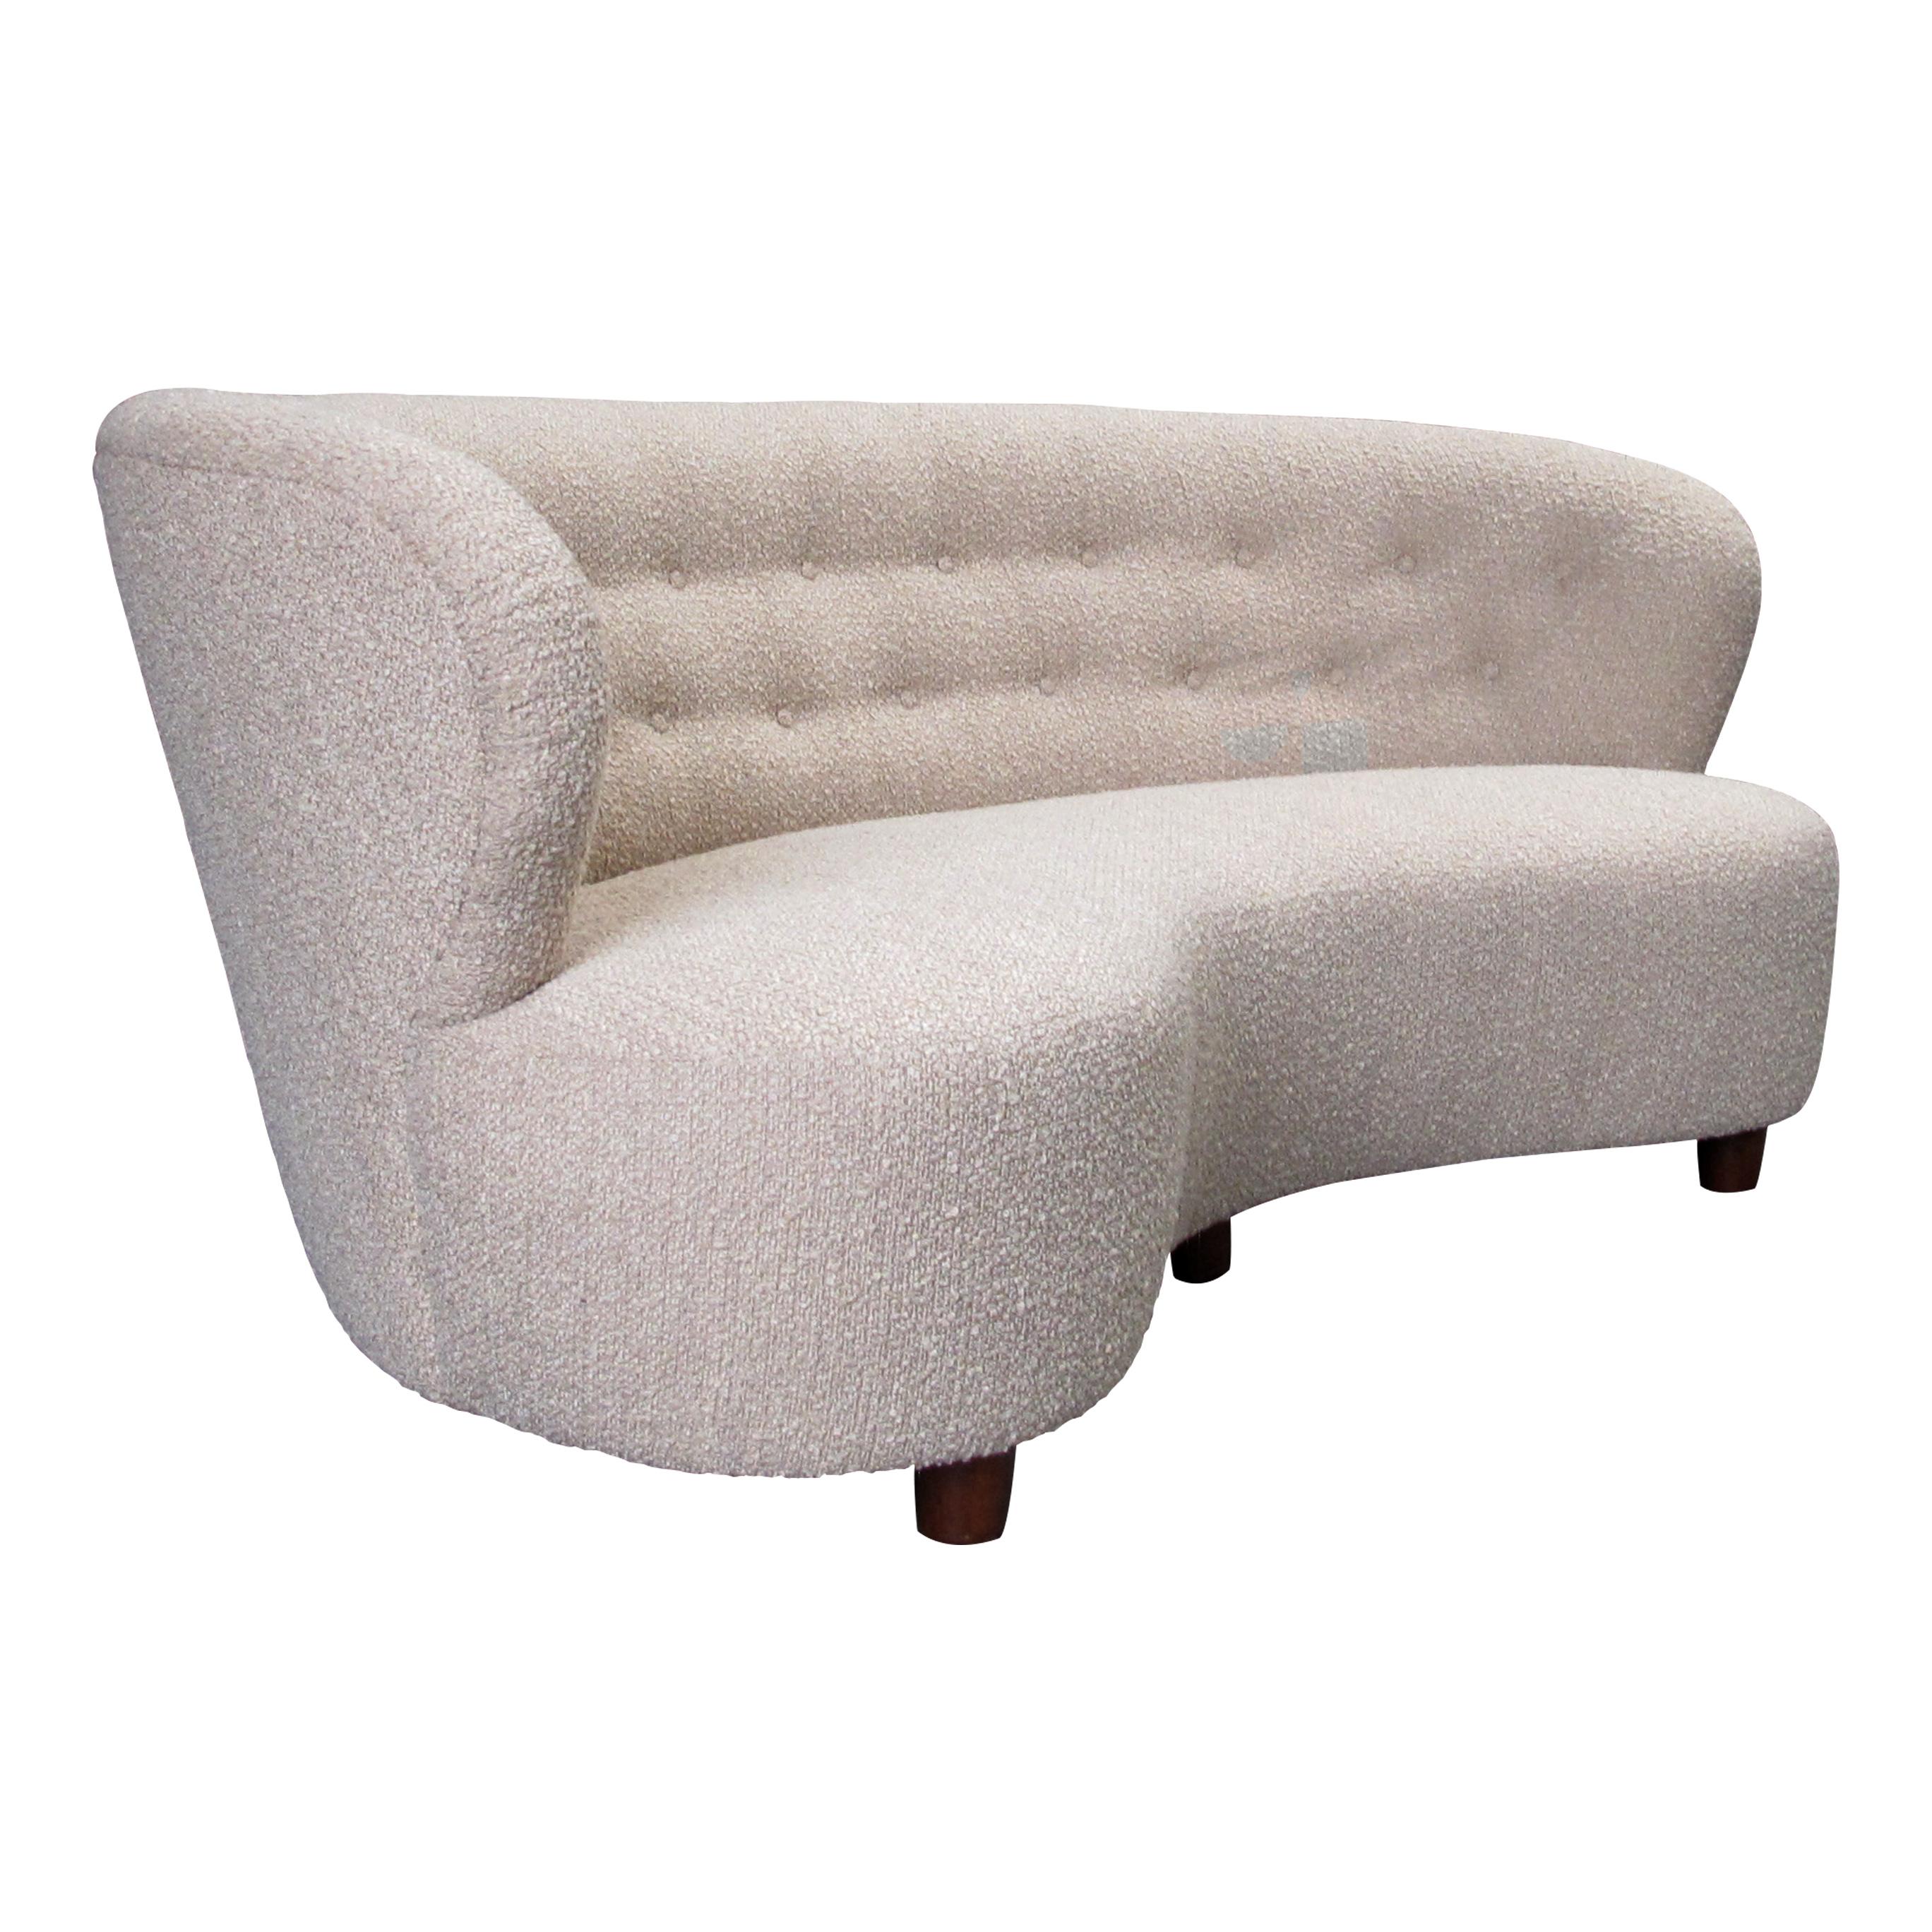 Dieses bequeme große Sofa ist ein Klassiker der dänischen Moderne aus den 1940er Jahren. Er hat ein einfaches, elegantes Design mit klaren Linien und einer geschwungenen Rückseite. Das Gestell aus Eichenholz ist stabil und gut verarbeitet, und der